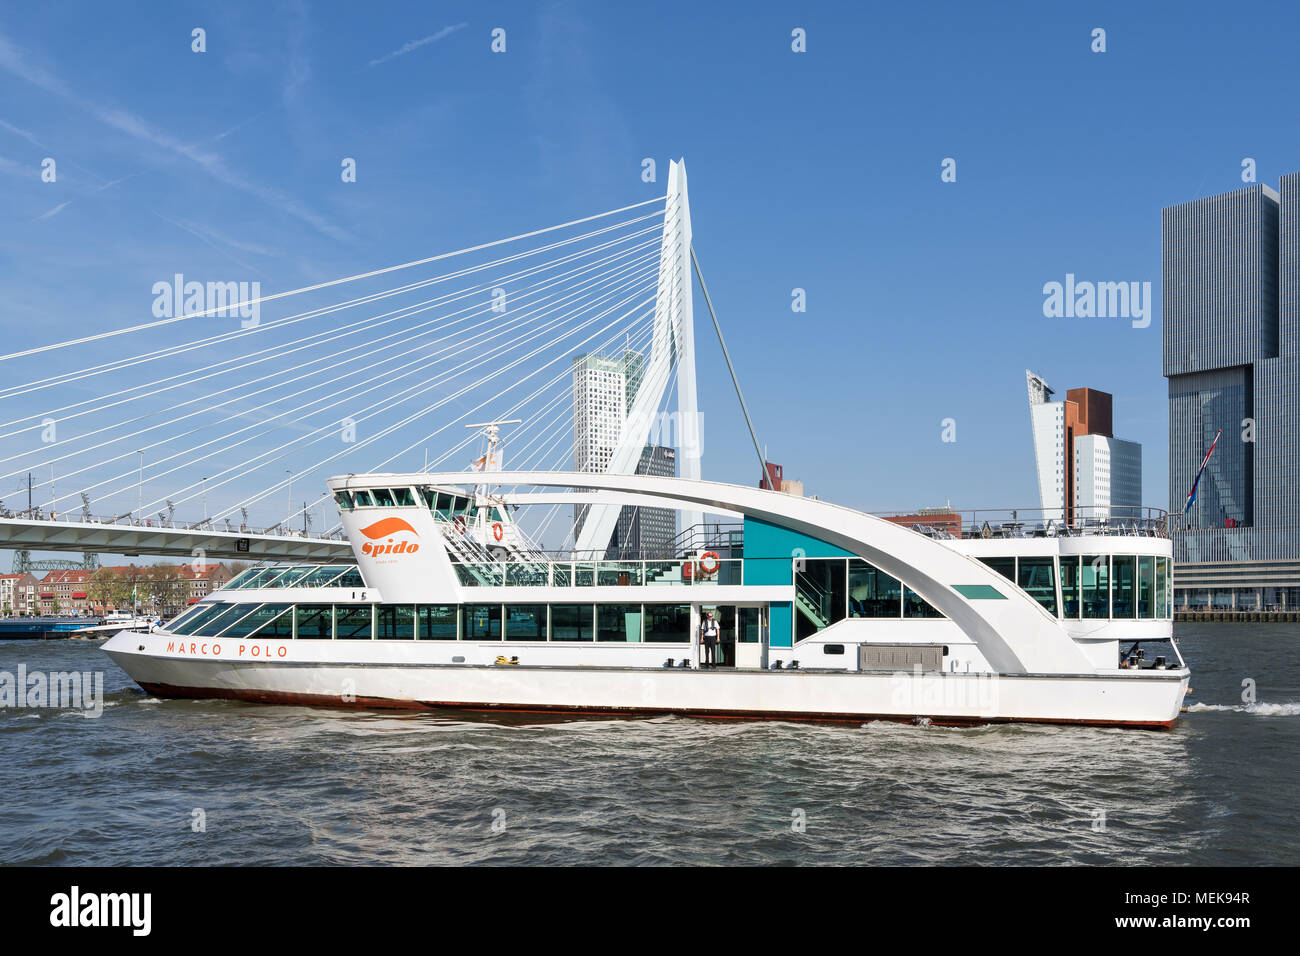 Ausflugsschiff MARCO POLO von Spido auf dem Fluss Nieuwe Maas in Rotterdam, Niederlande Stockfoto